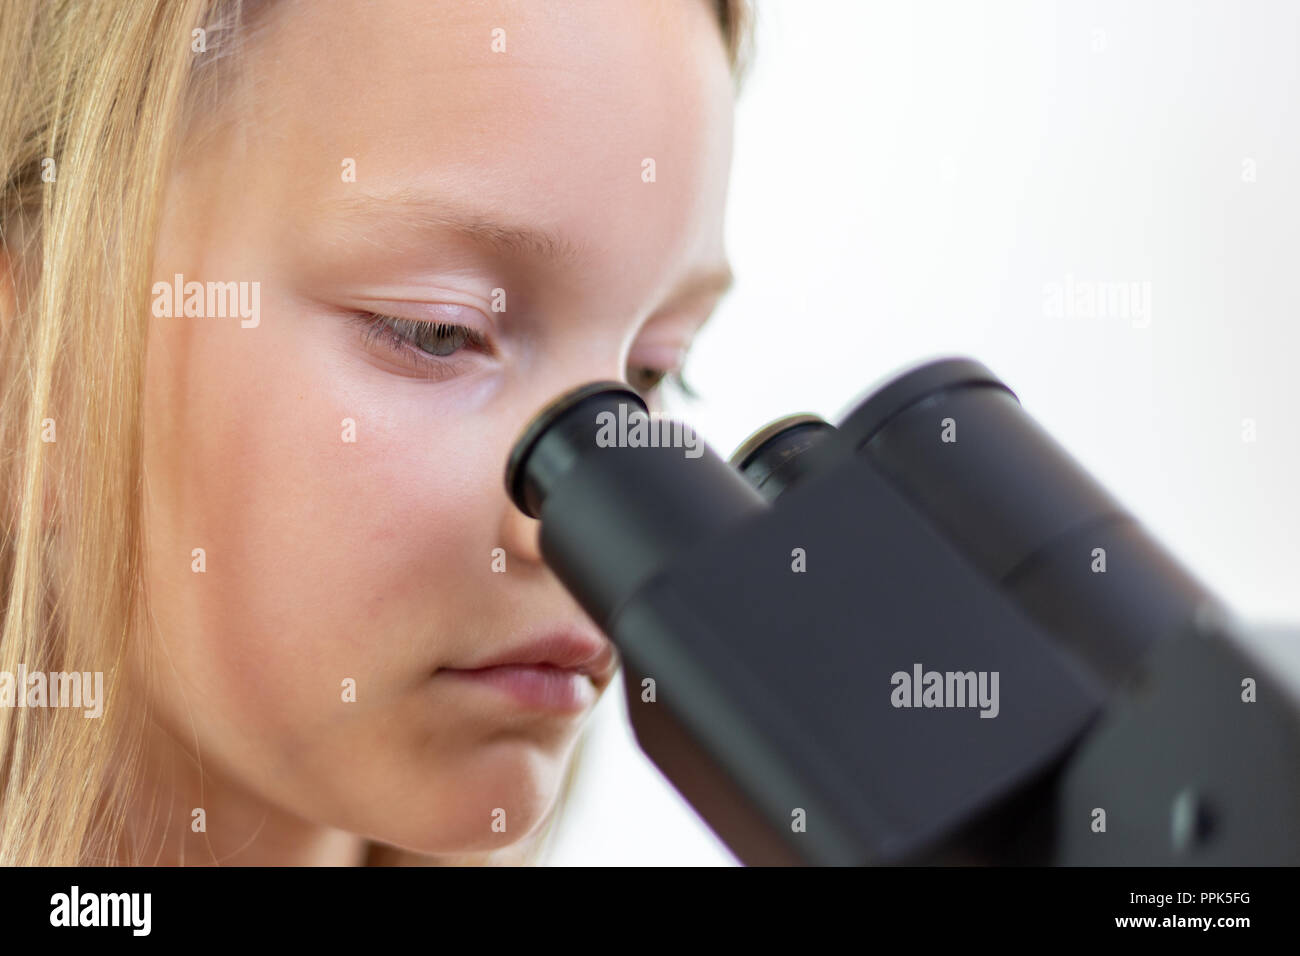 Un écolier de 9 ans blonde regarde dans l'oculaire d'un microscope. Isolé Banque D'Images